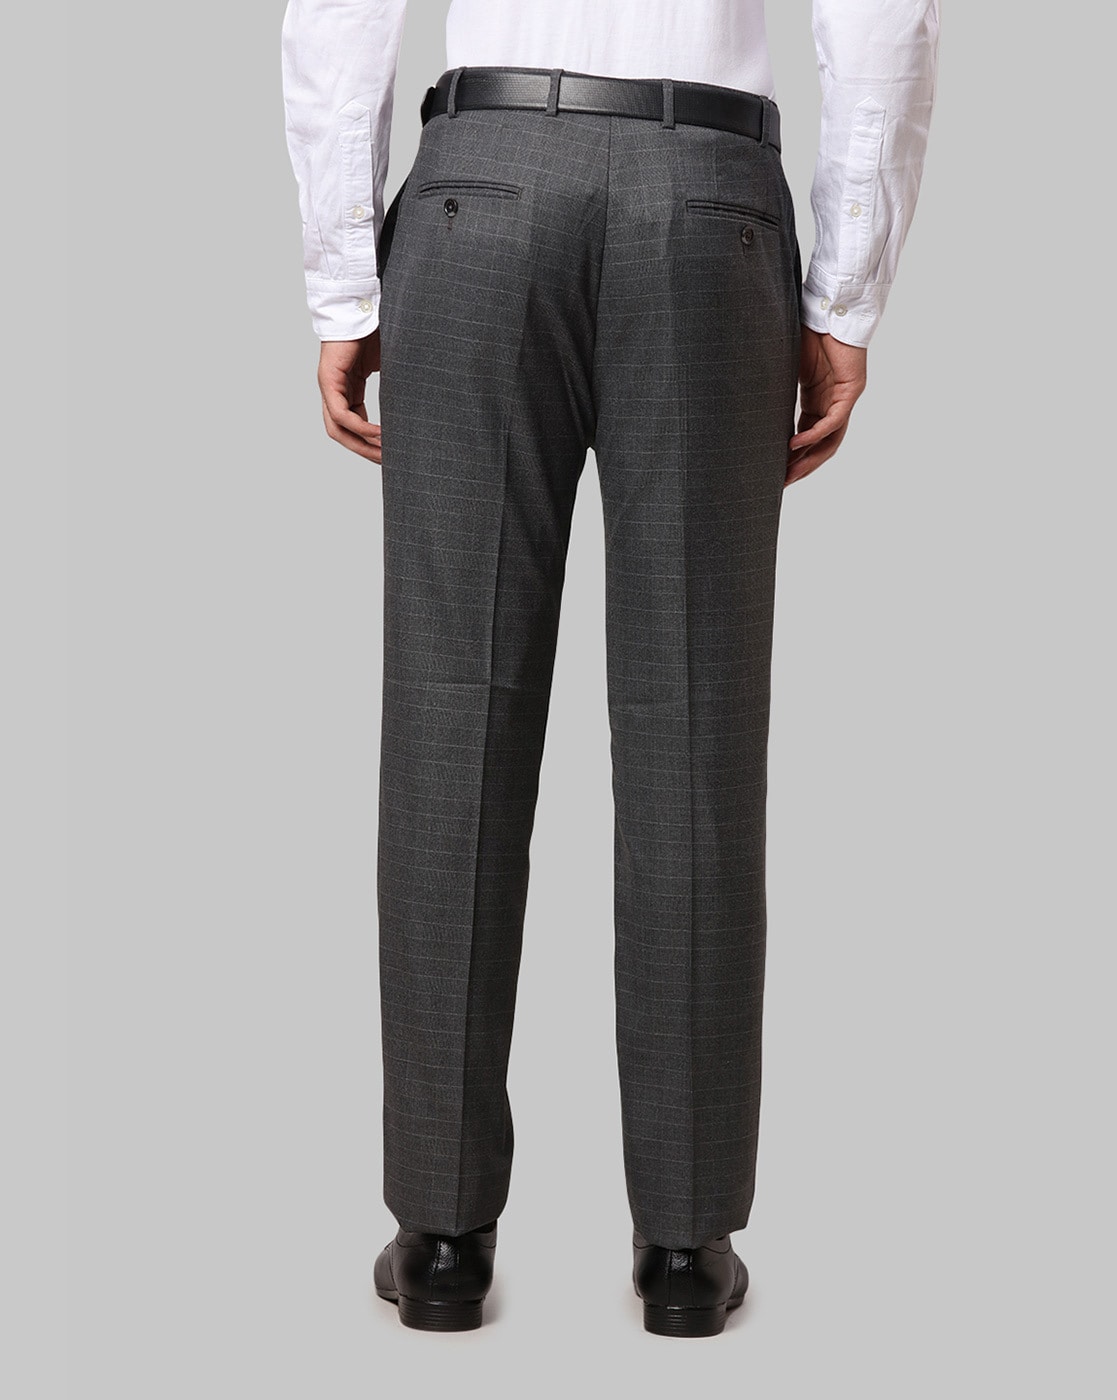 Dark grey suit trousers - Comfort fit Plus size - Shop Varteks d.d.